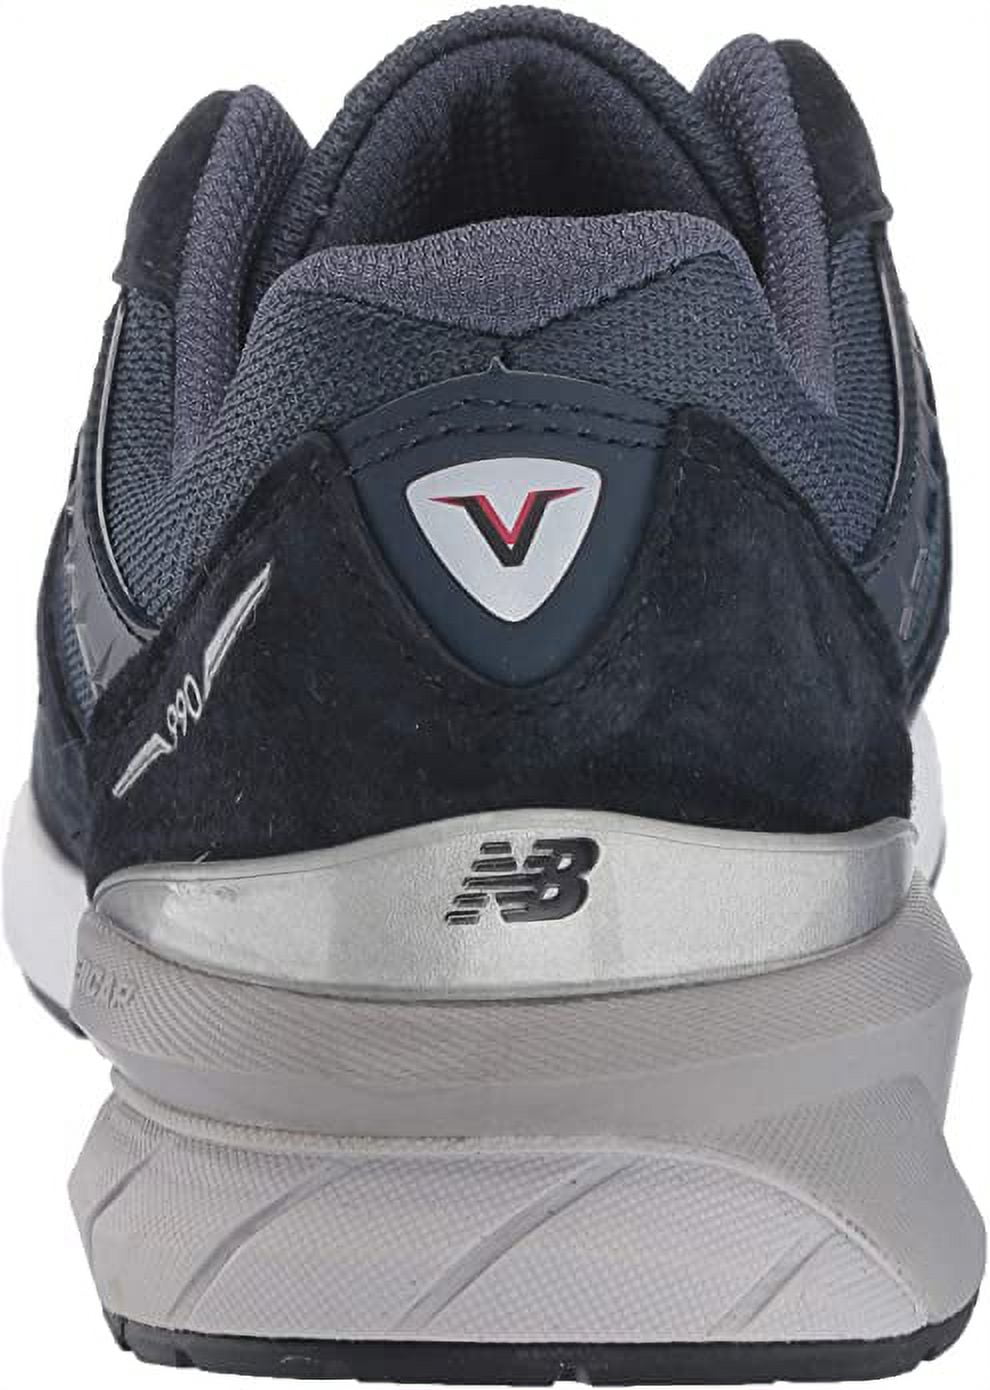 New Balance M990BB5: Men's 990 V5 Sneaker, Black/Black (Navy